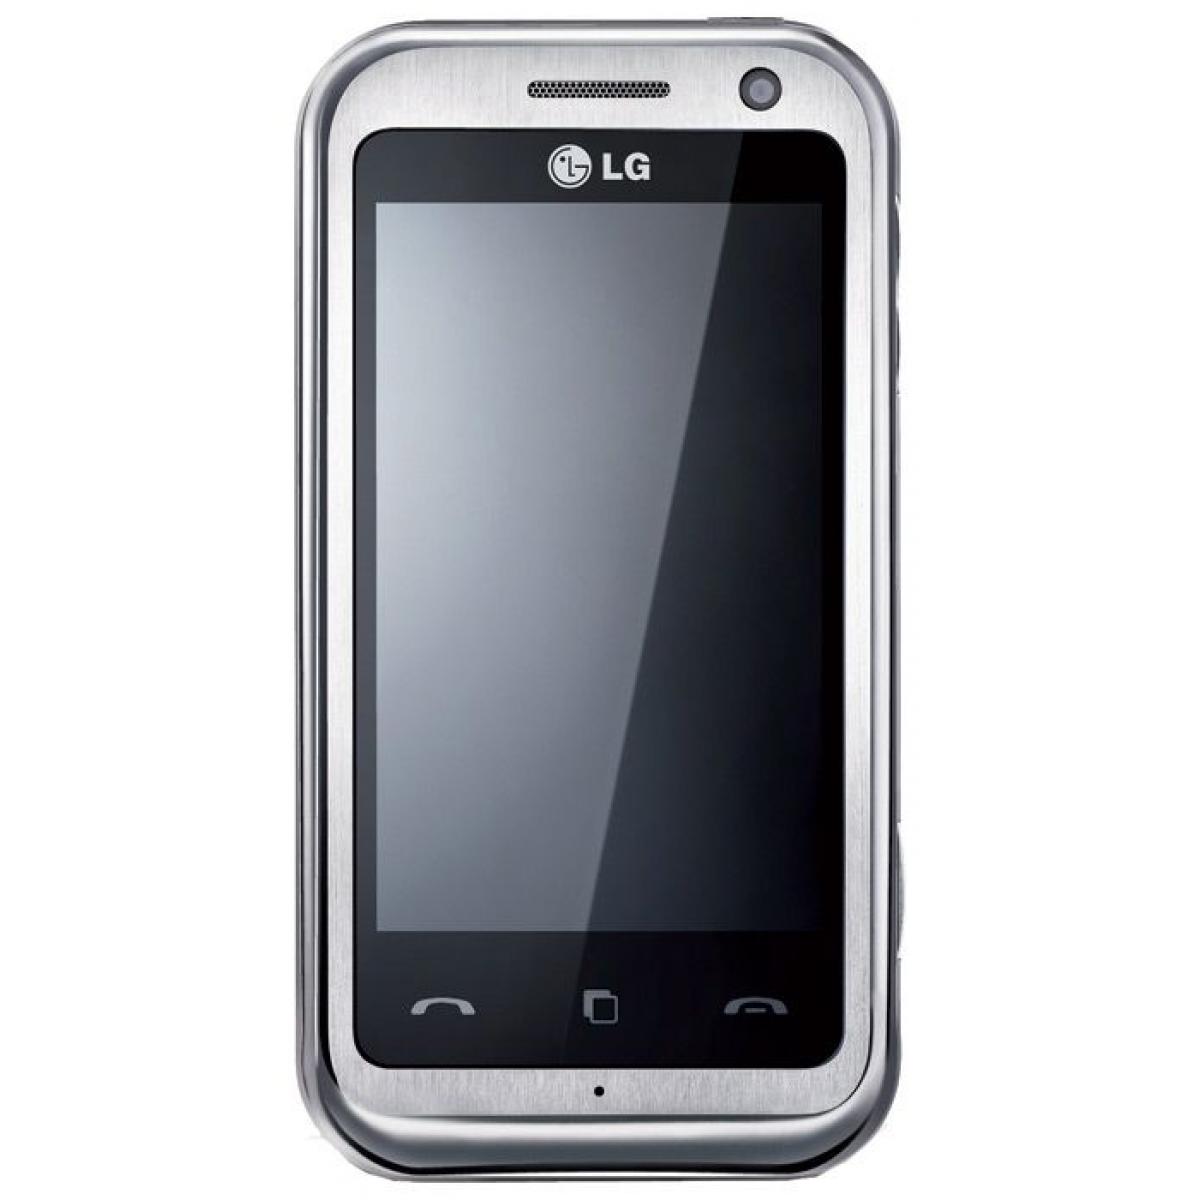 Купить телефон в мурманске. LG km900 Arena. LG kp900. LG Phone 2010. LG 900.